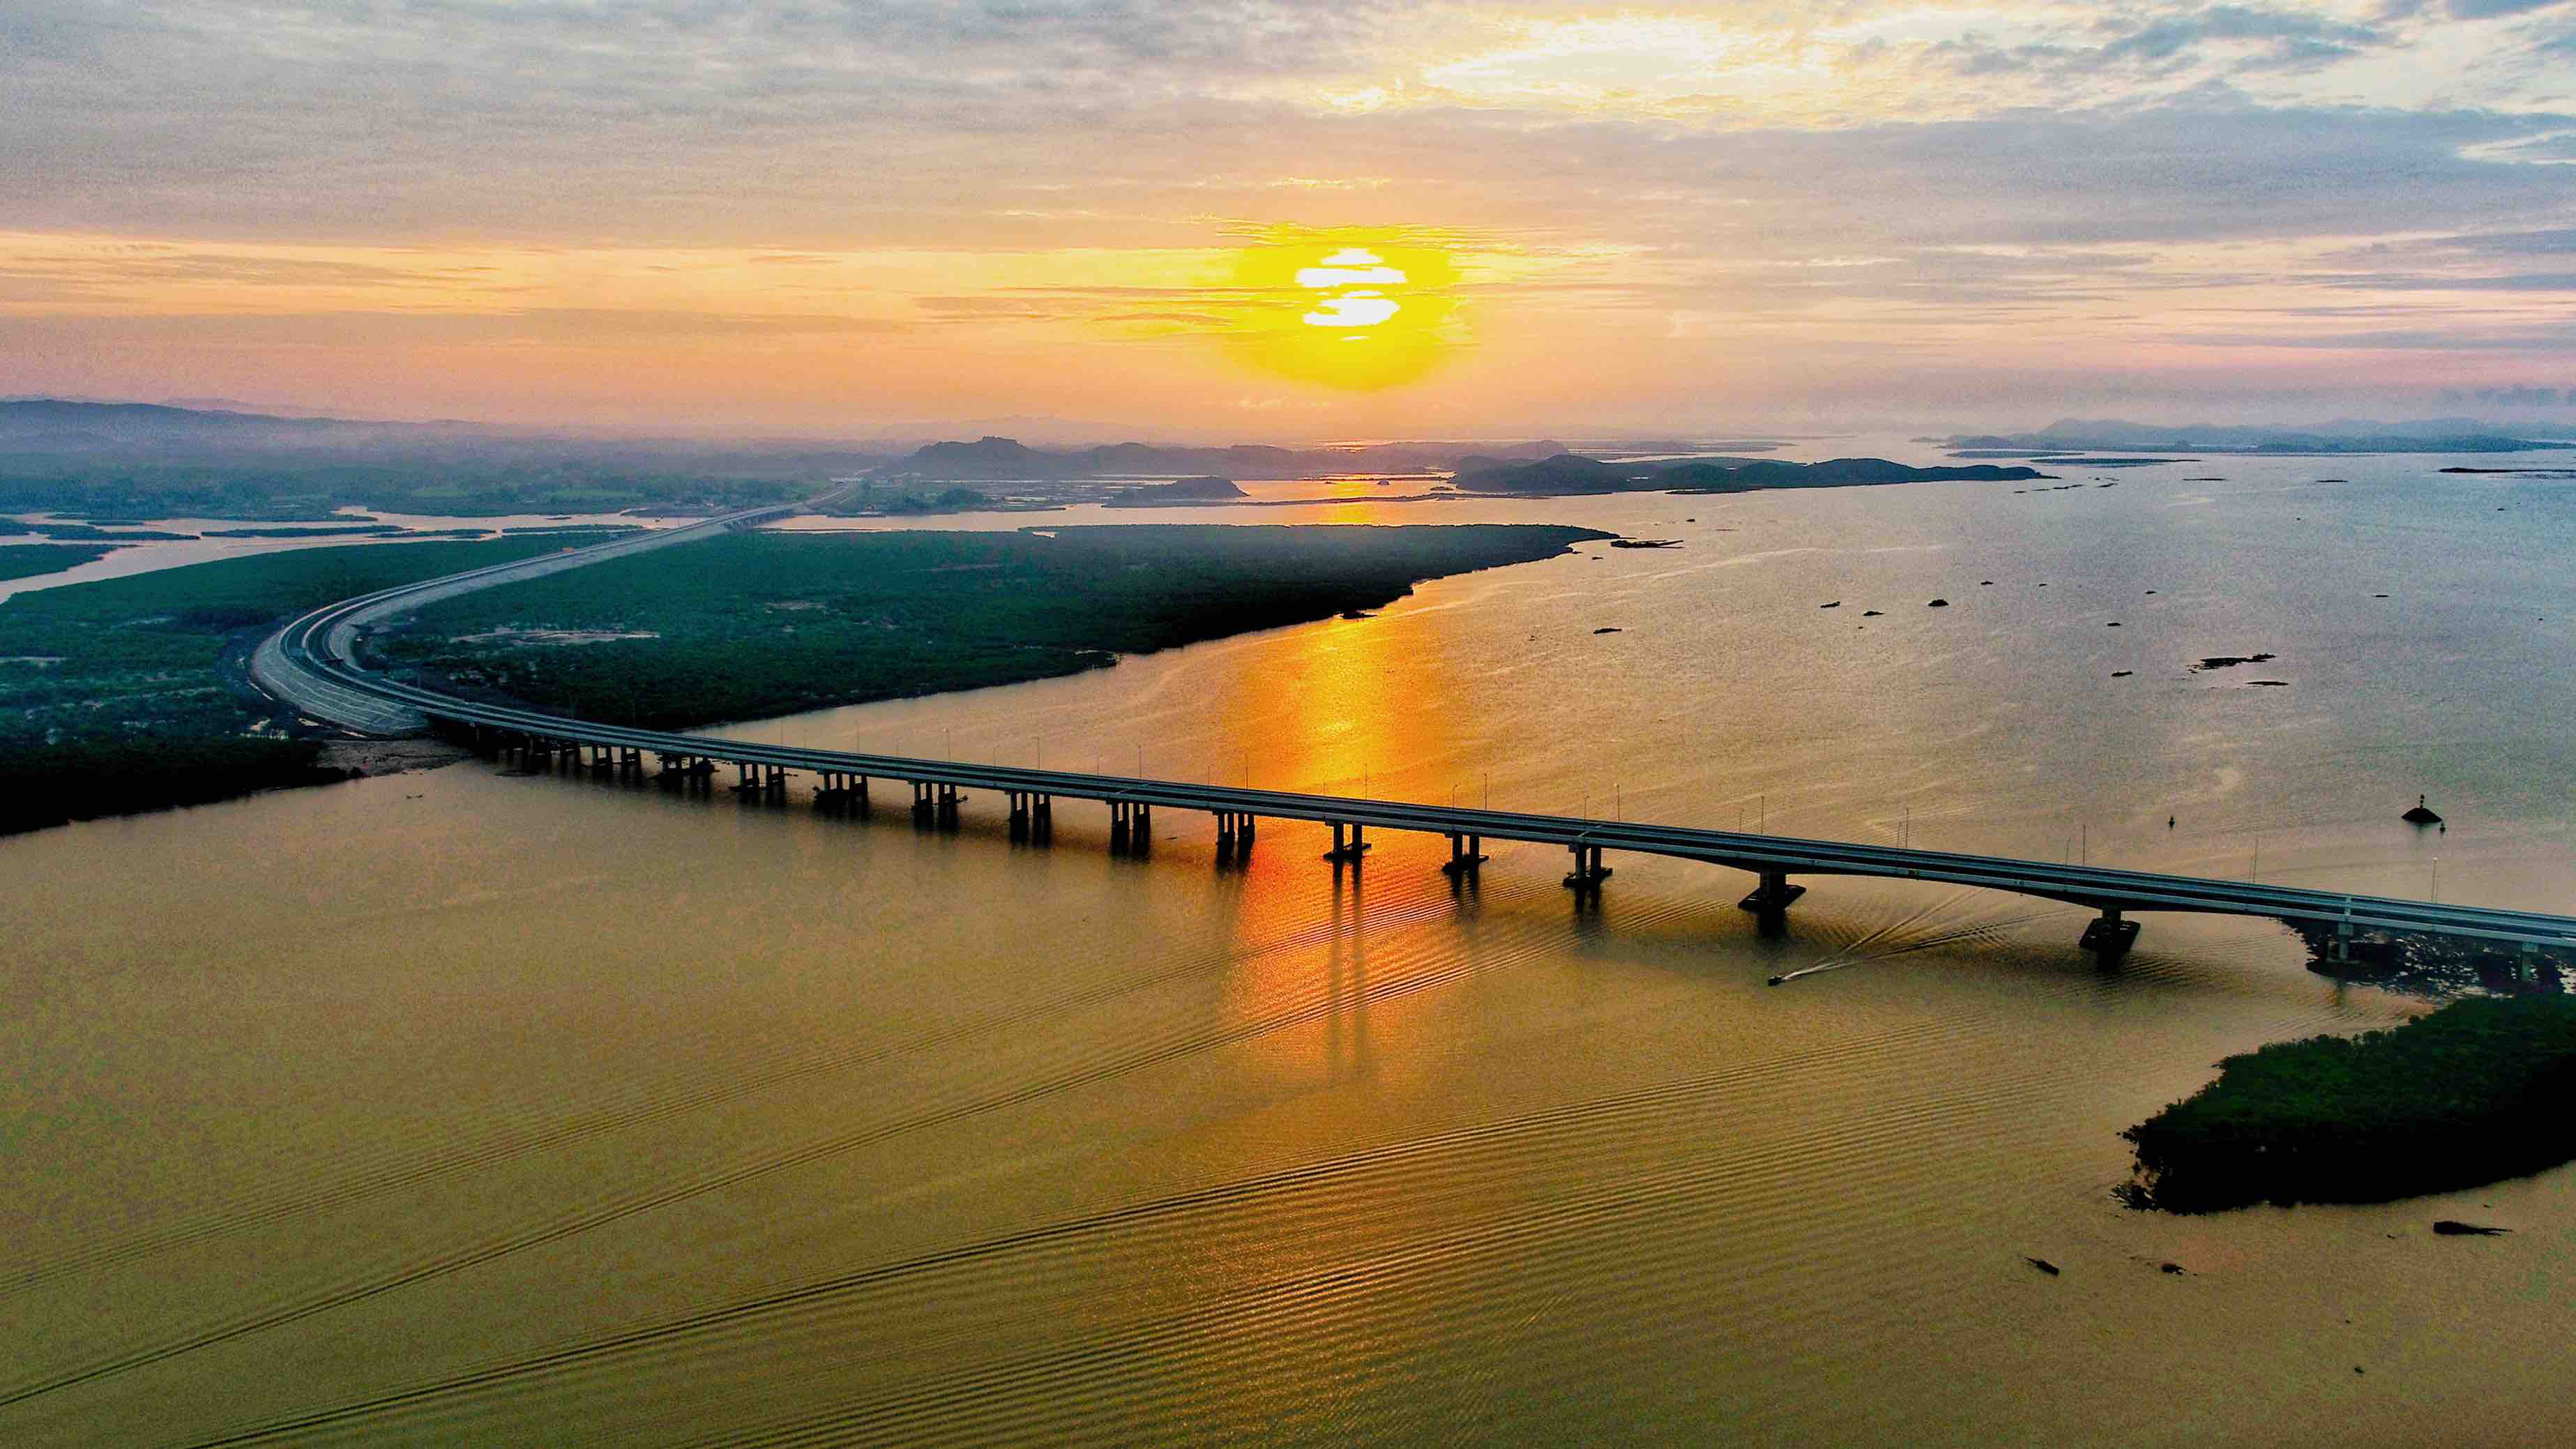 Quảng Ninh đang xây dựng một sản phẩm du lịch độc đáo, với dọc tuyến cao tốc dài 176 km là điểm nhấn chính. Hãy cùng xem hình ảnh để thưởng thức những khung cảnh đẹp và độc đáo của du lịch dọc tuyến cao tốc này.